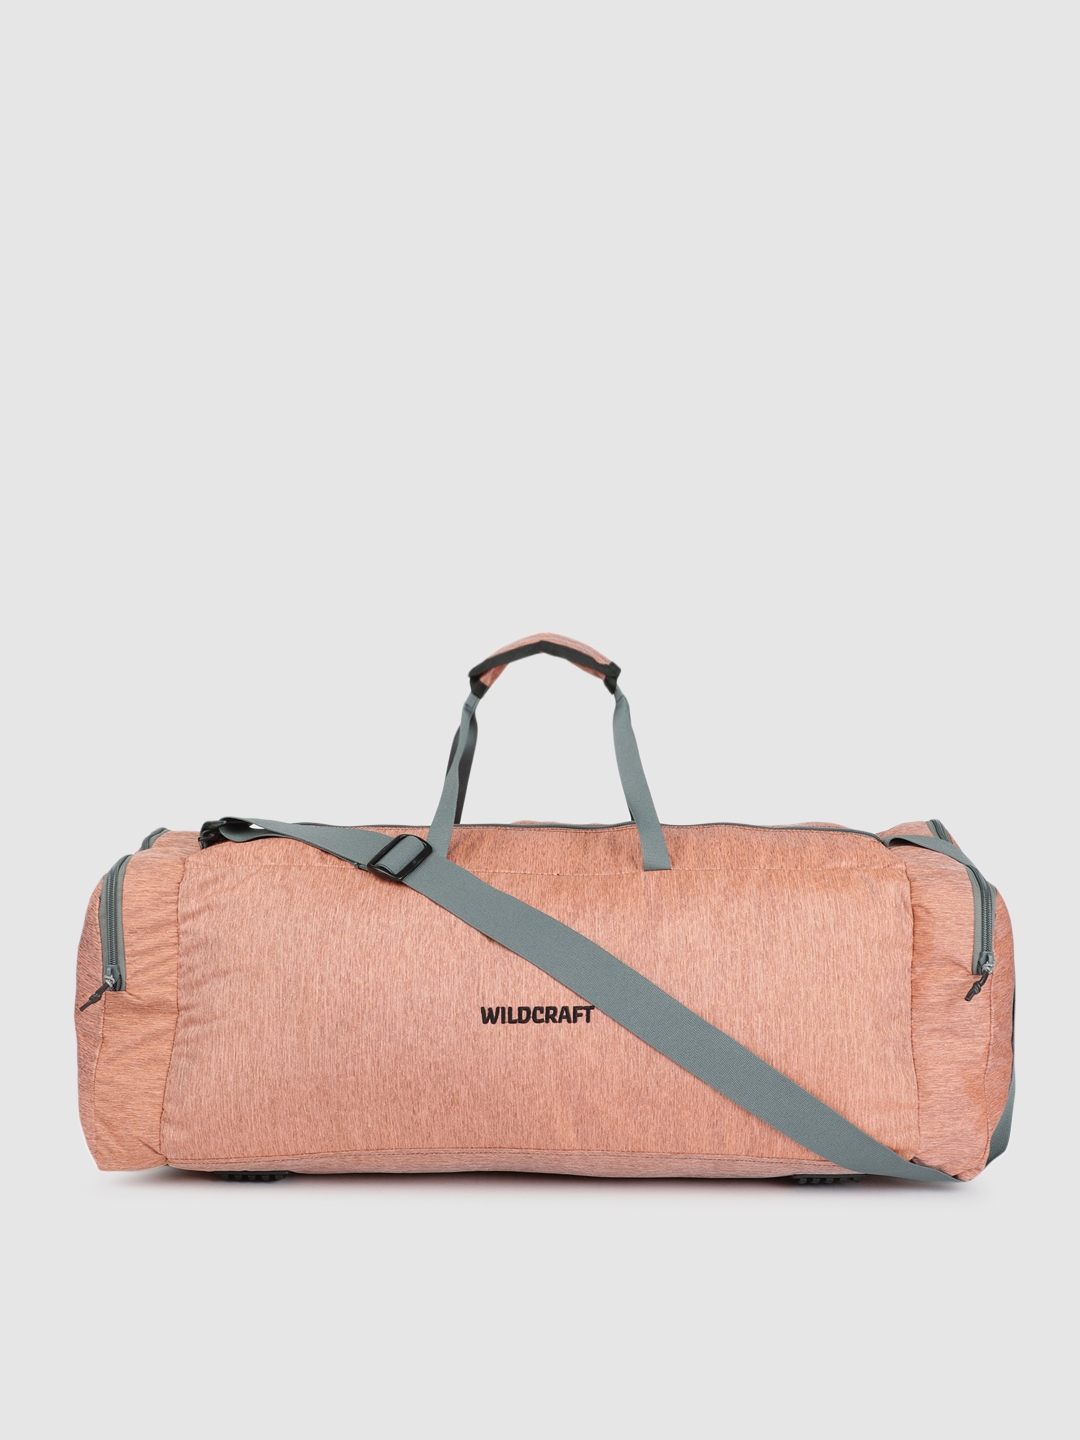 wildcraft power duffel travel bag